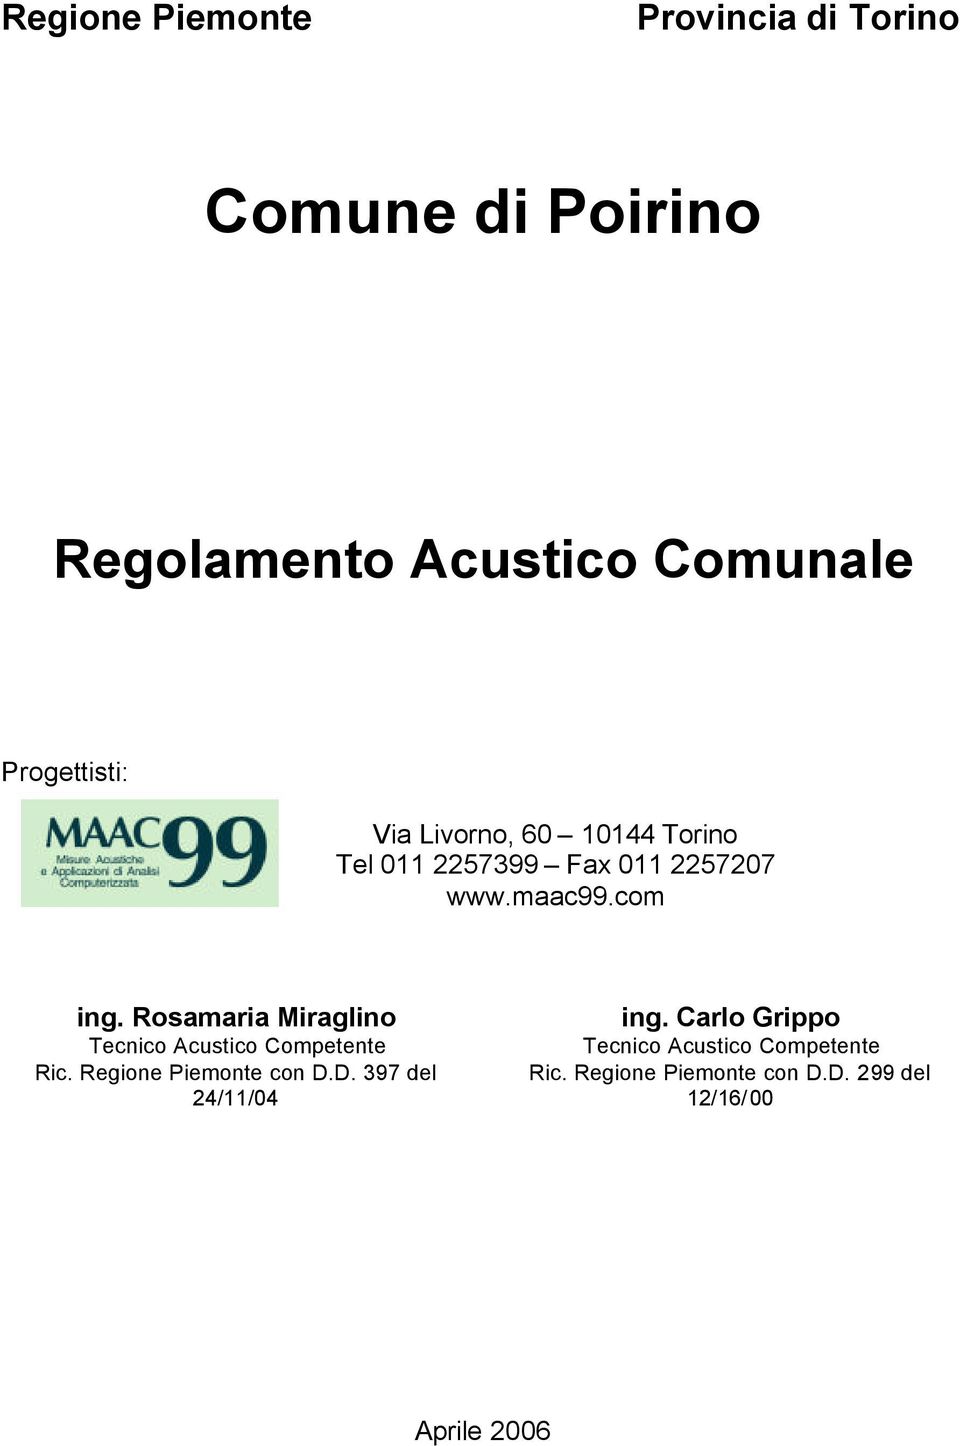 Rosamaria Miraglino Tecnico Acustico Competente Ric. Regione Piemonte con D.